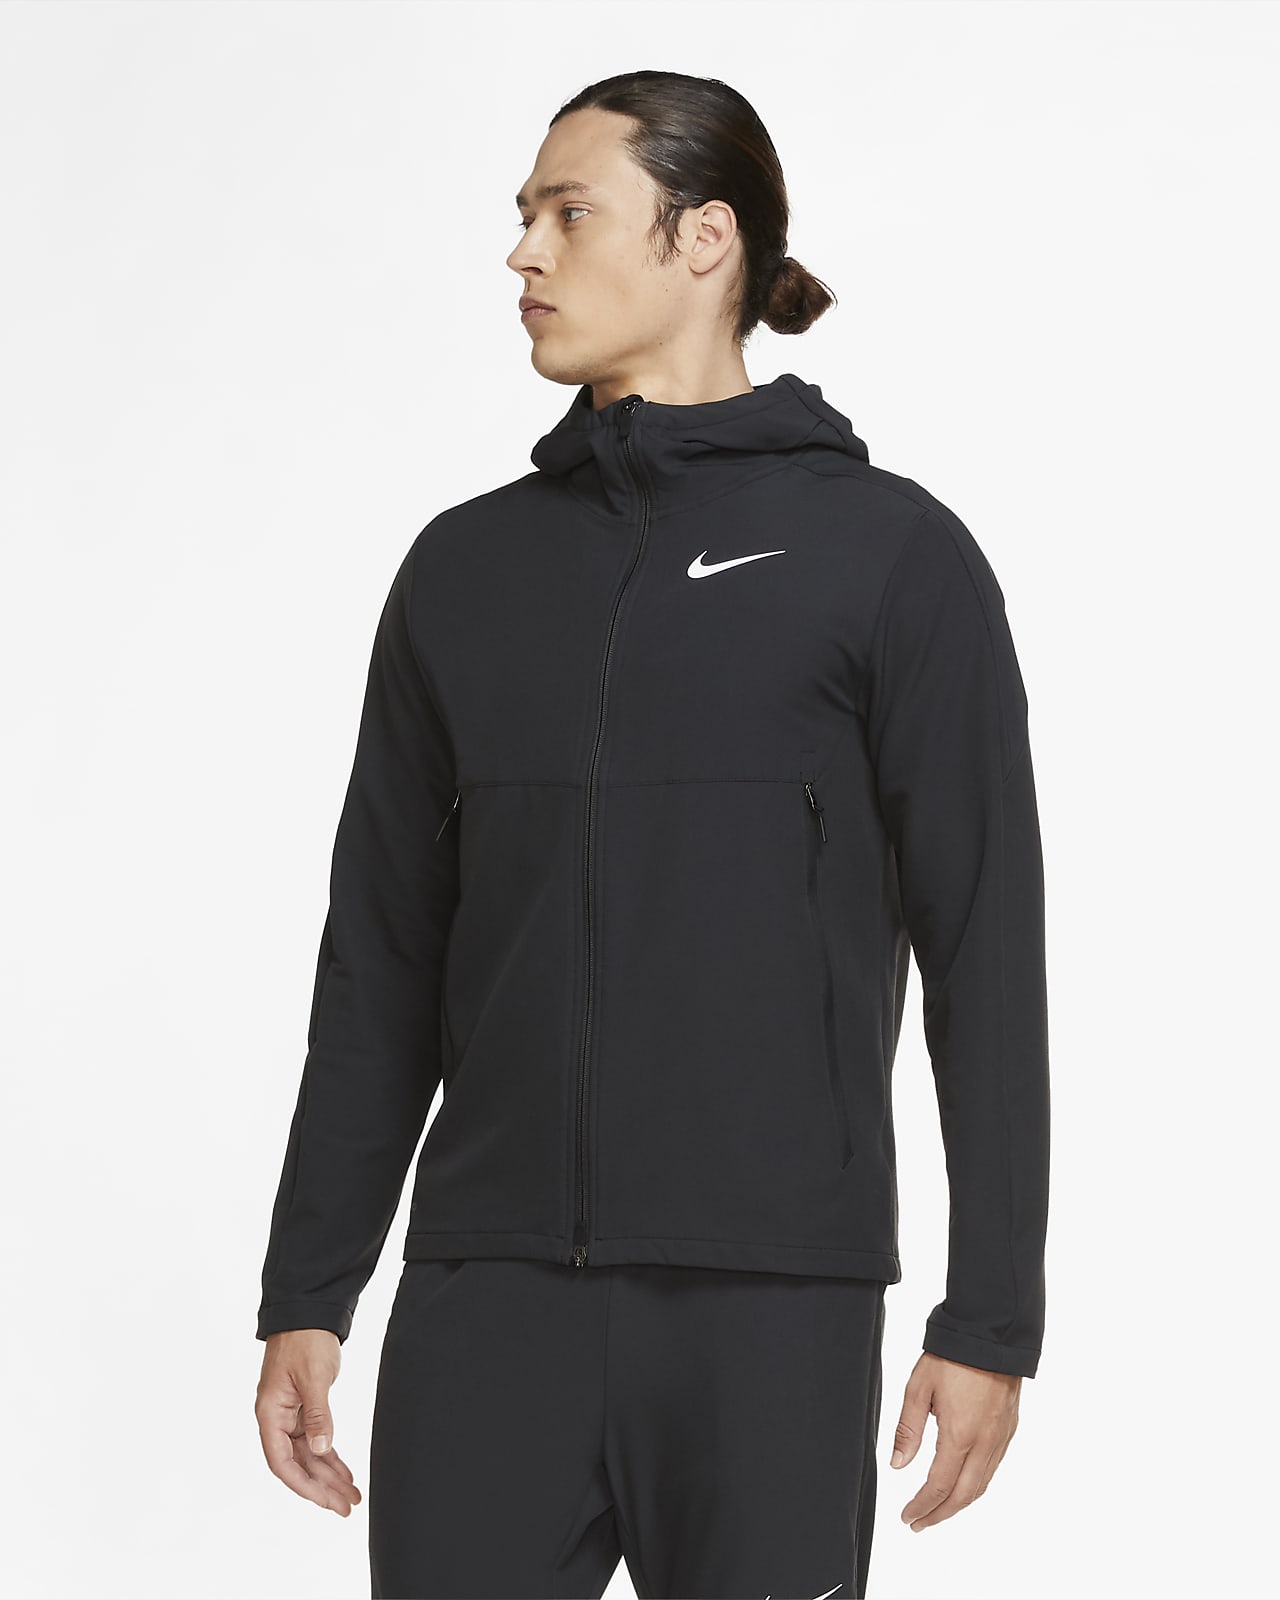 Vævet Nike-vintertræningsjakke til mænd